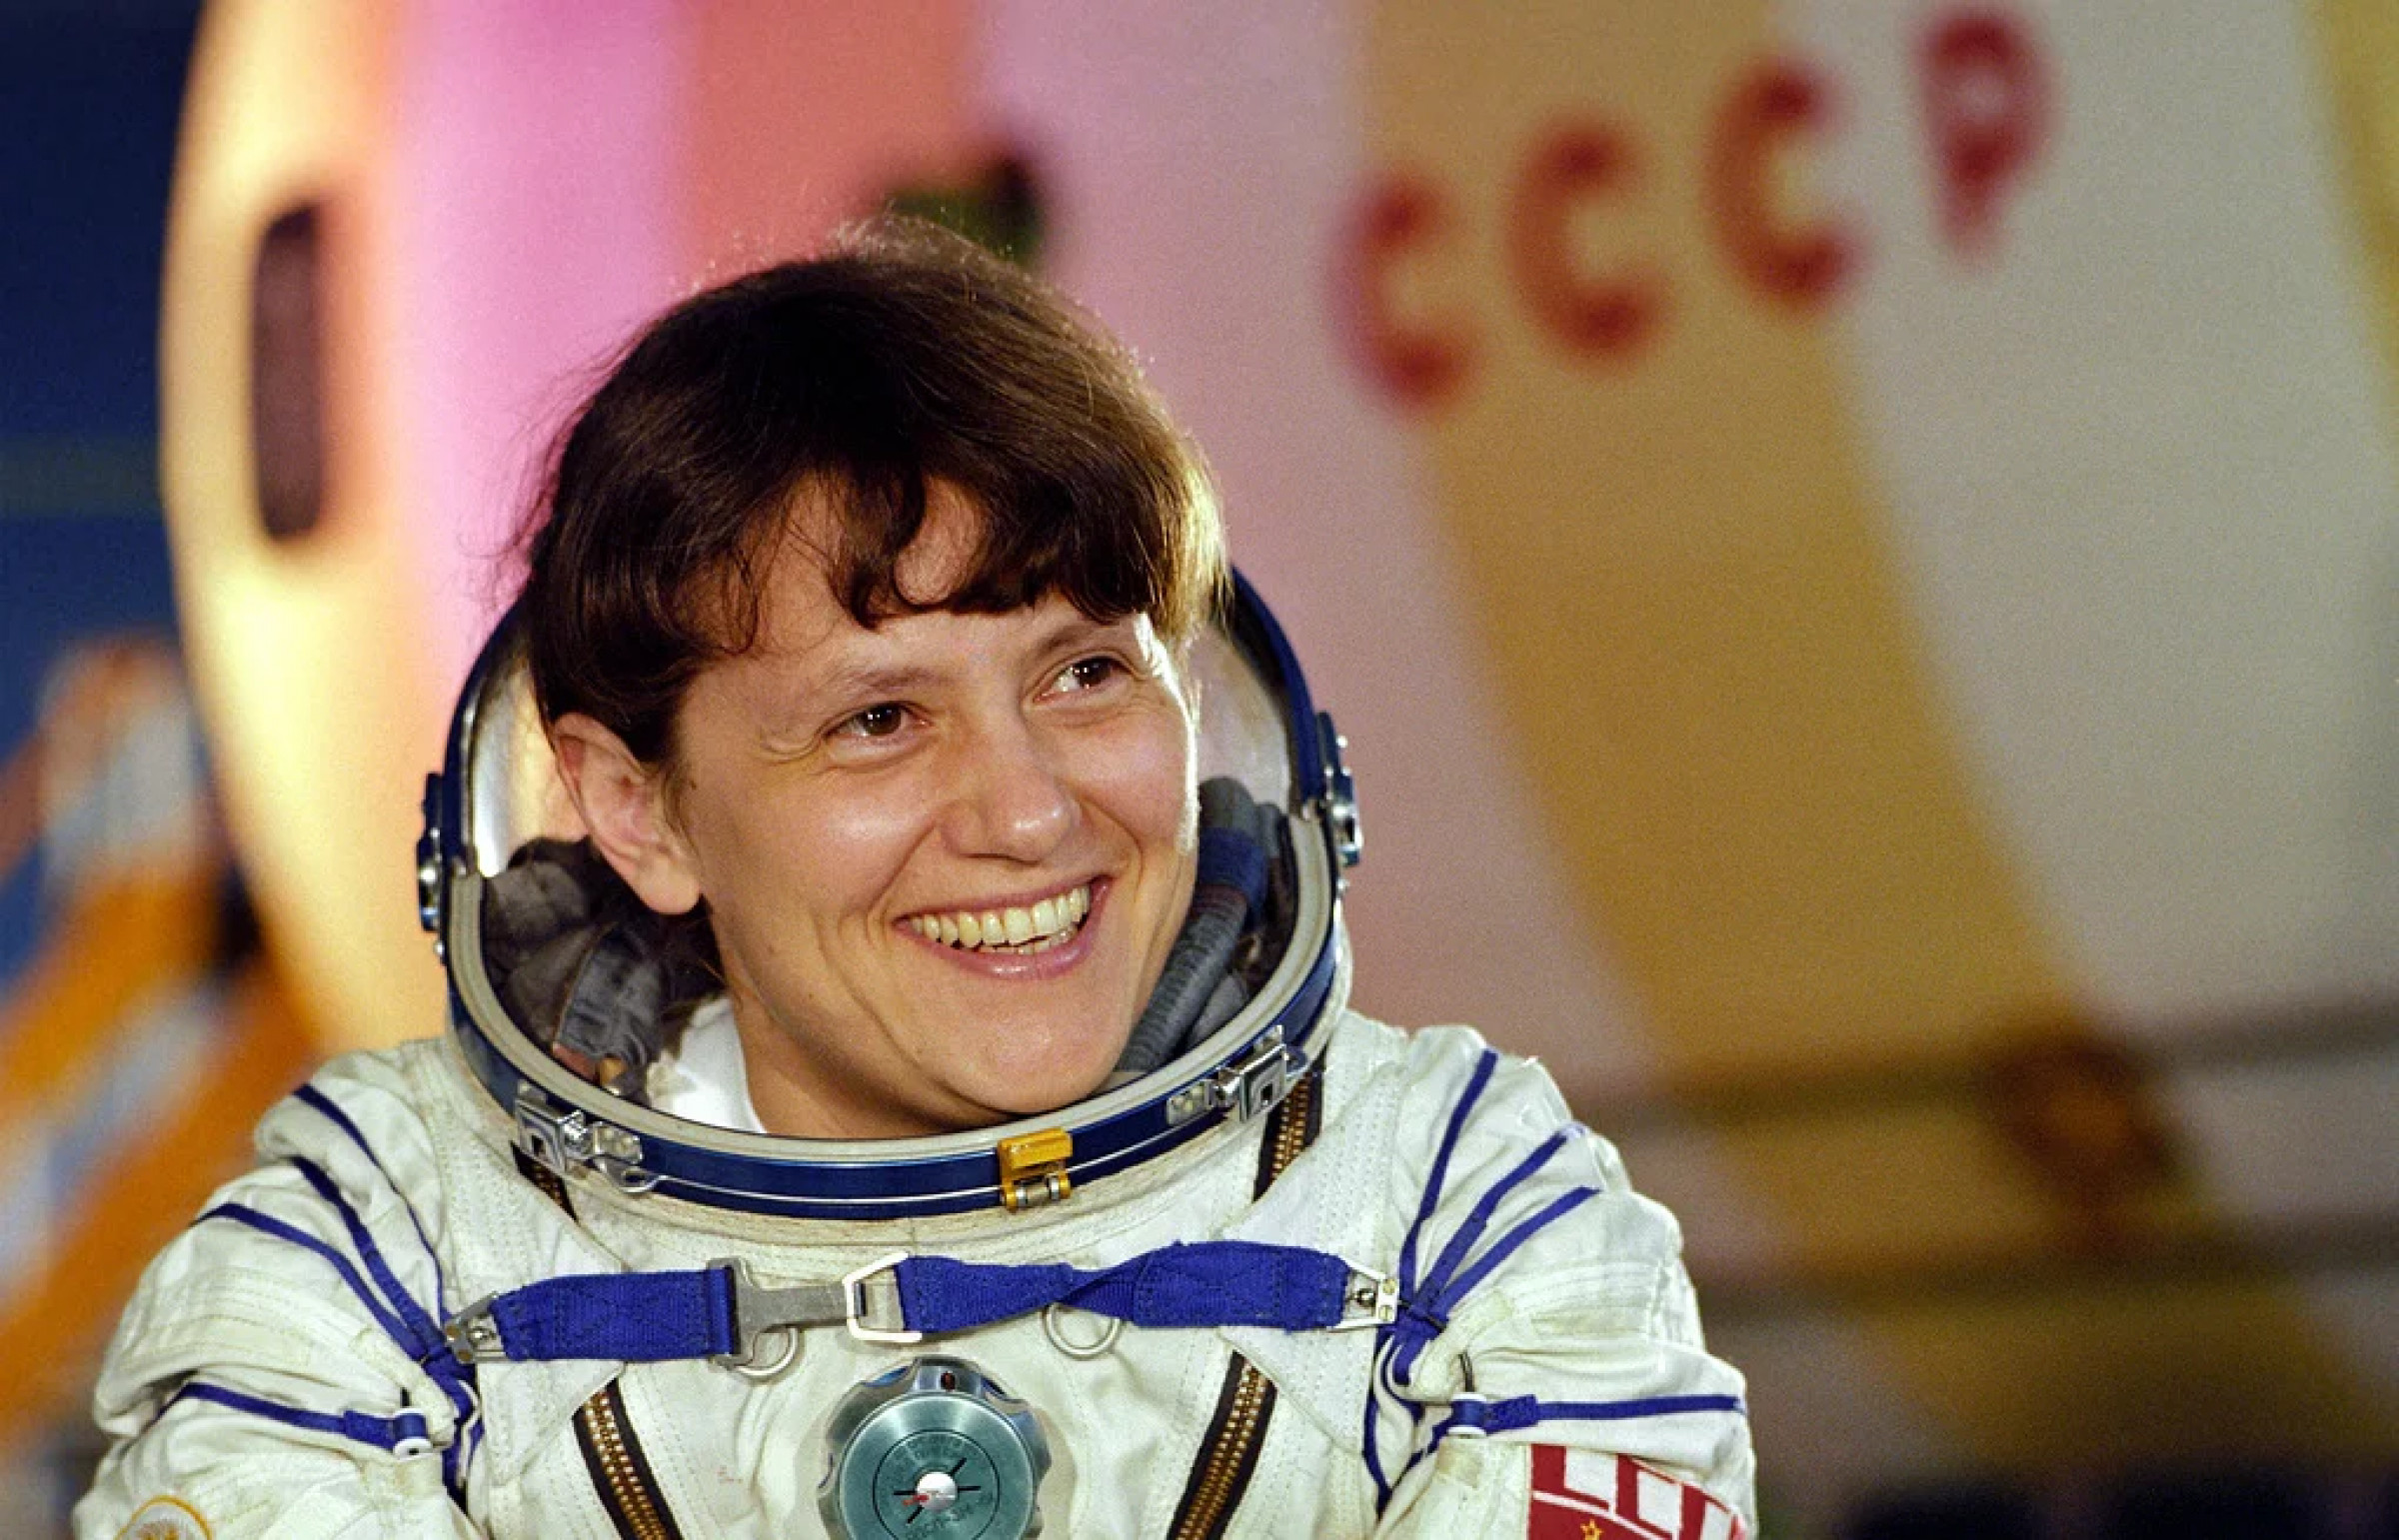 Первая женщина совершившая выход в открытый космос